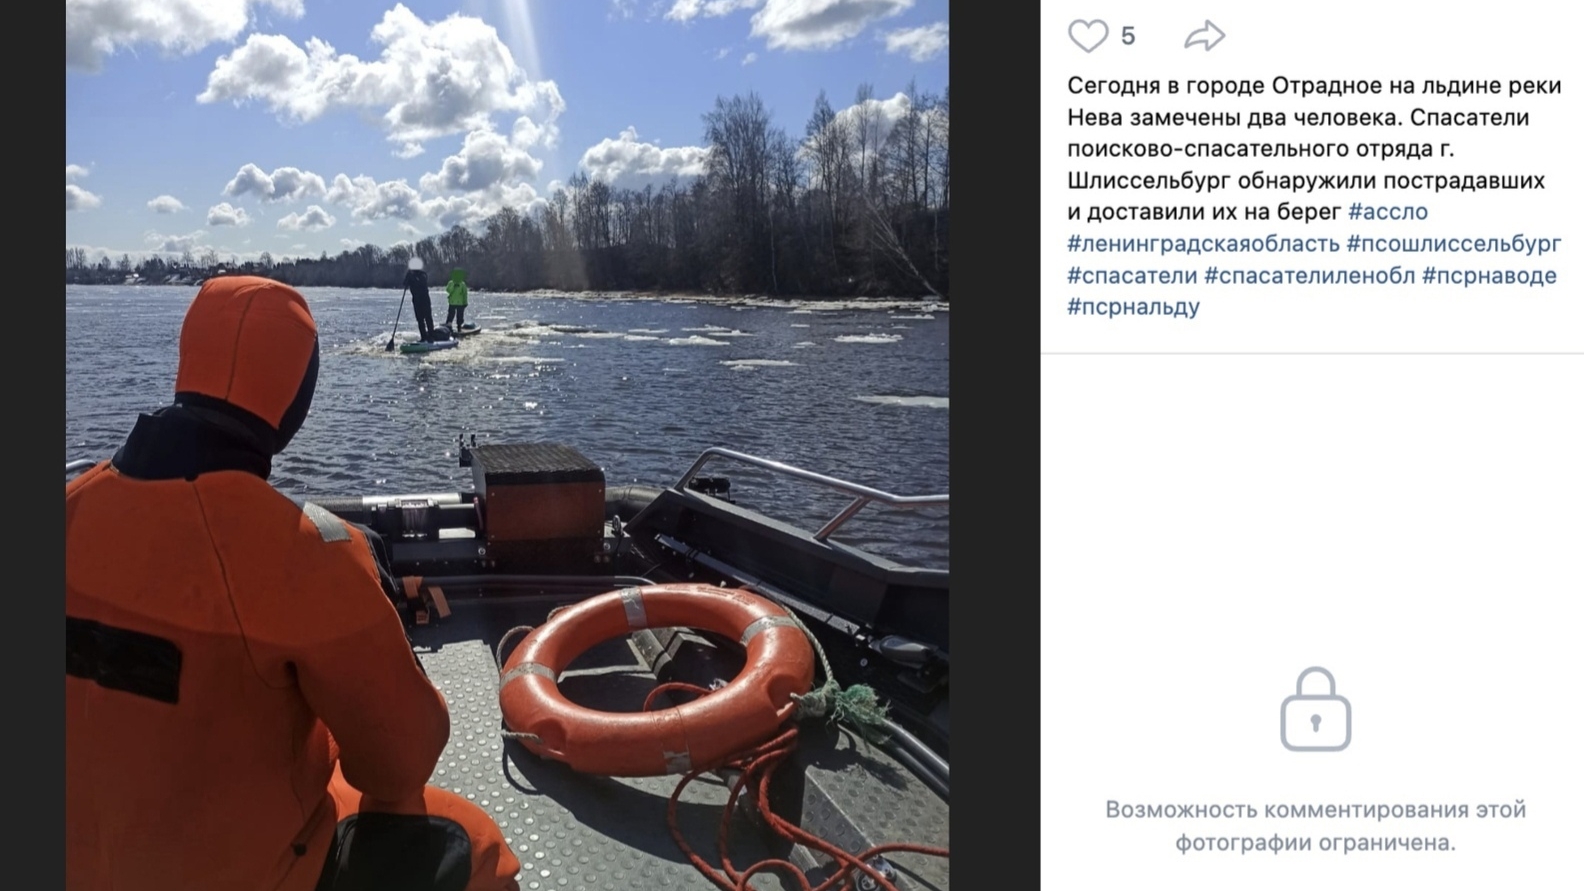 Два человека застряли на дрейфующей льдине на Неве близ города Отрадное